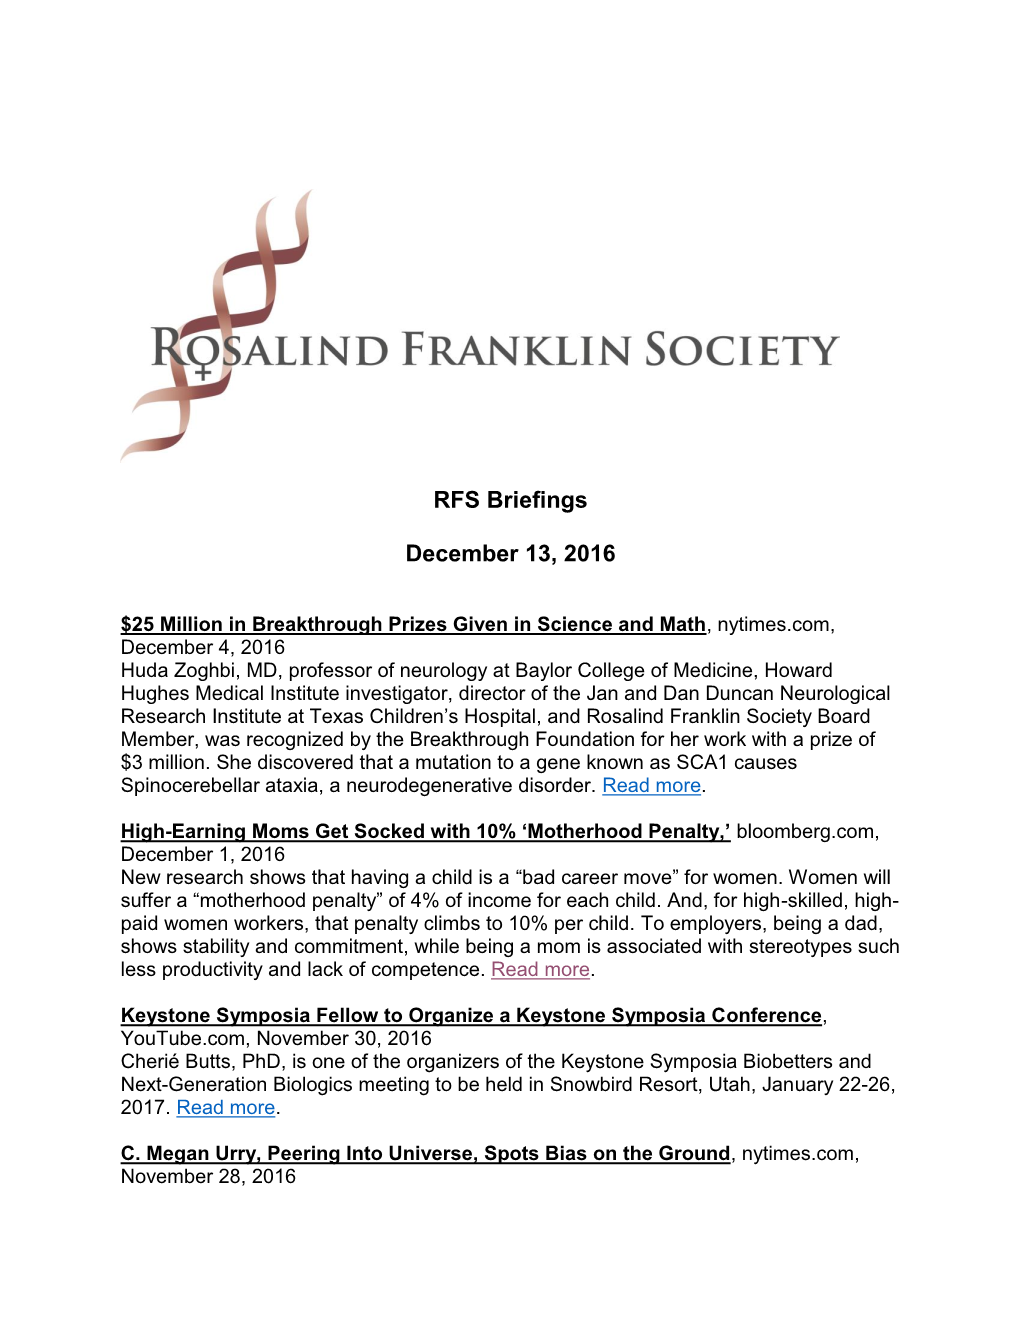 RFS Briefings December 13, 2016